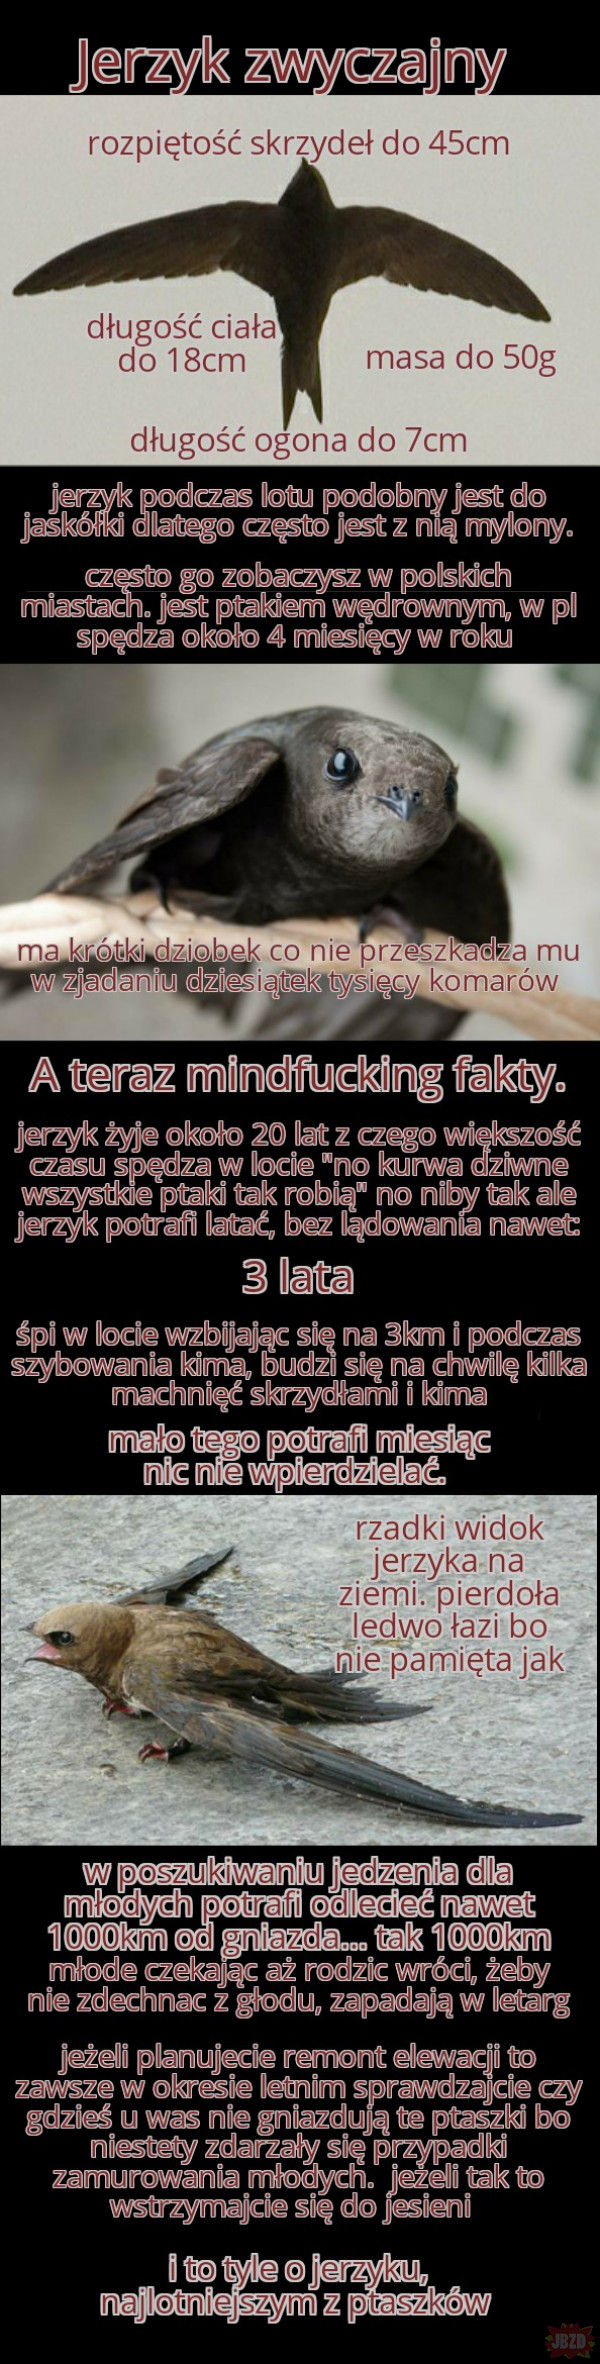 najciekawsze ptaki polski cz.2